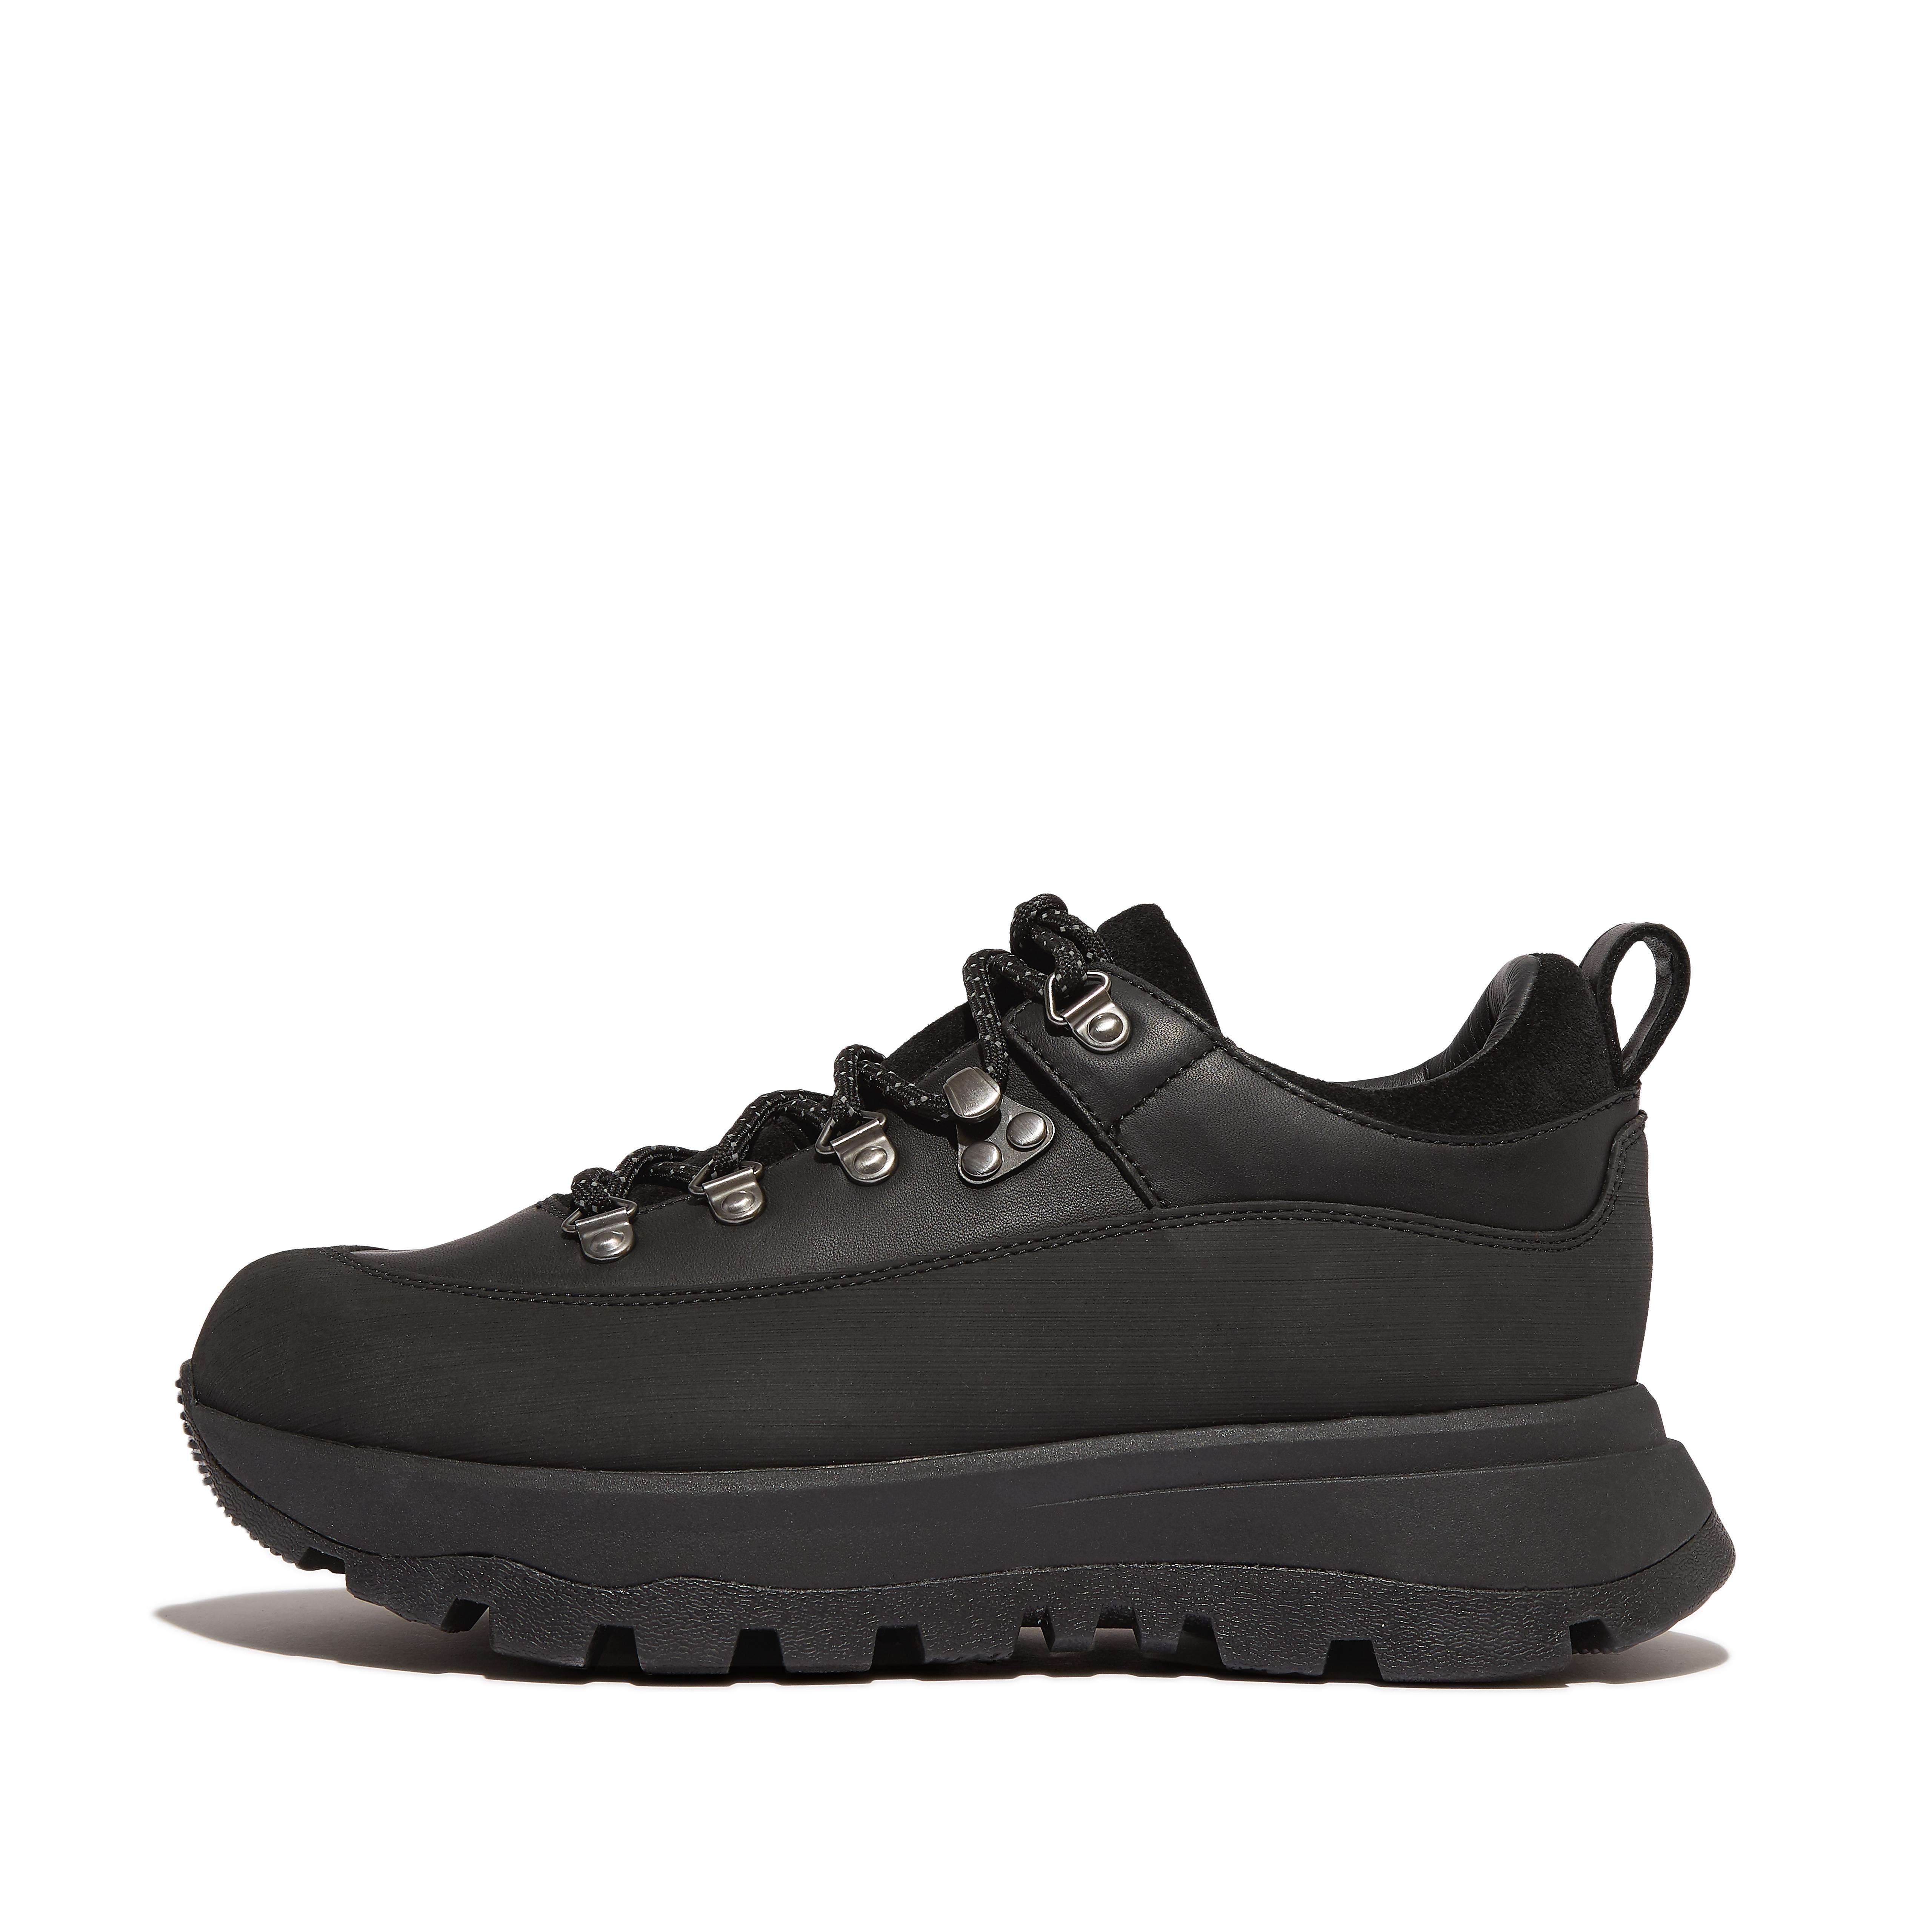 핏플랍 Fitflop Waterproof Leather/Suede Walking Sneakers,All Black